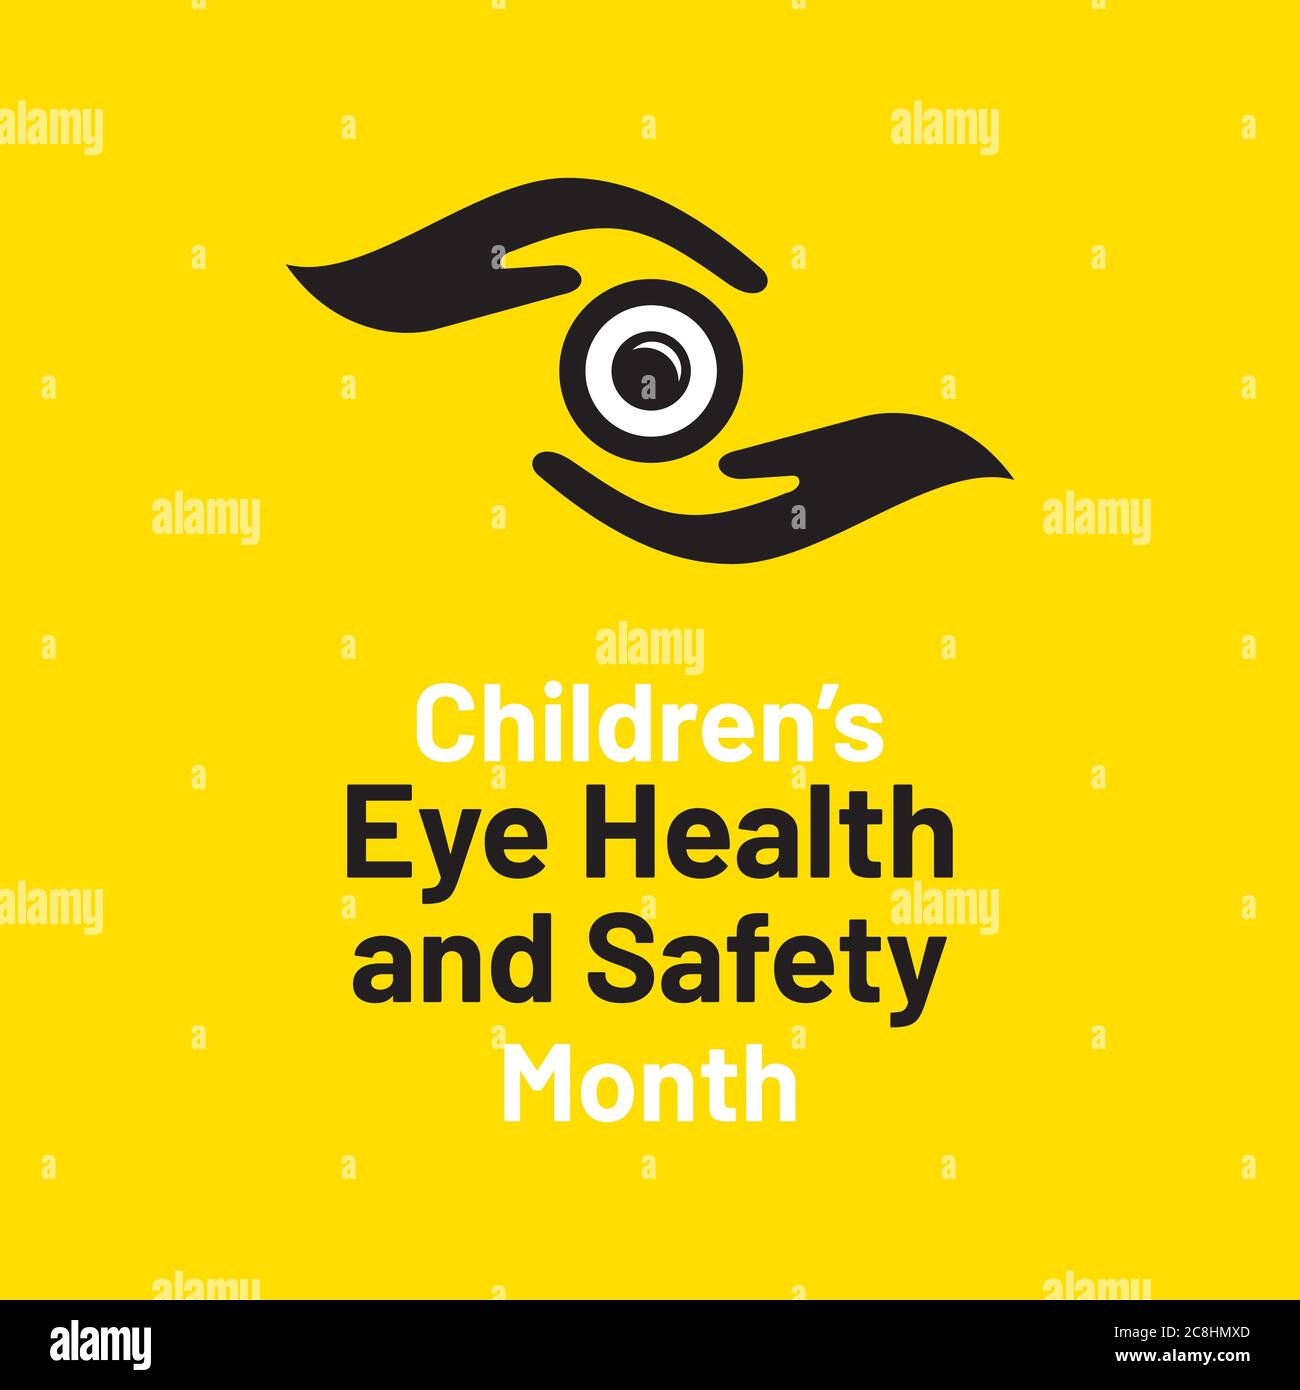 août est la conception d'affiches de sensibilisation pour le mois de la santé et de la sécurité des yeux des enfants Illustration de Vecteur